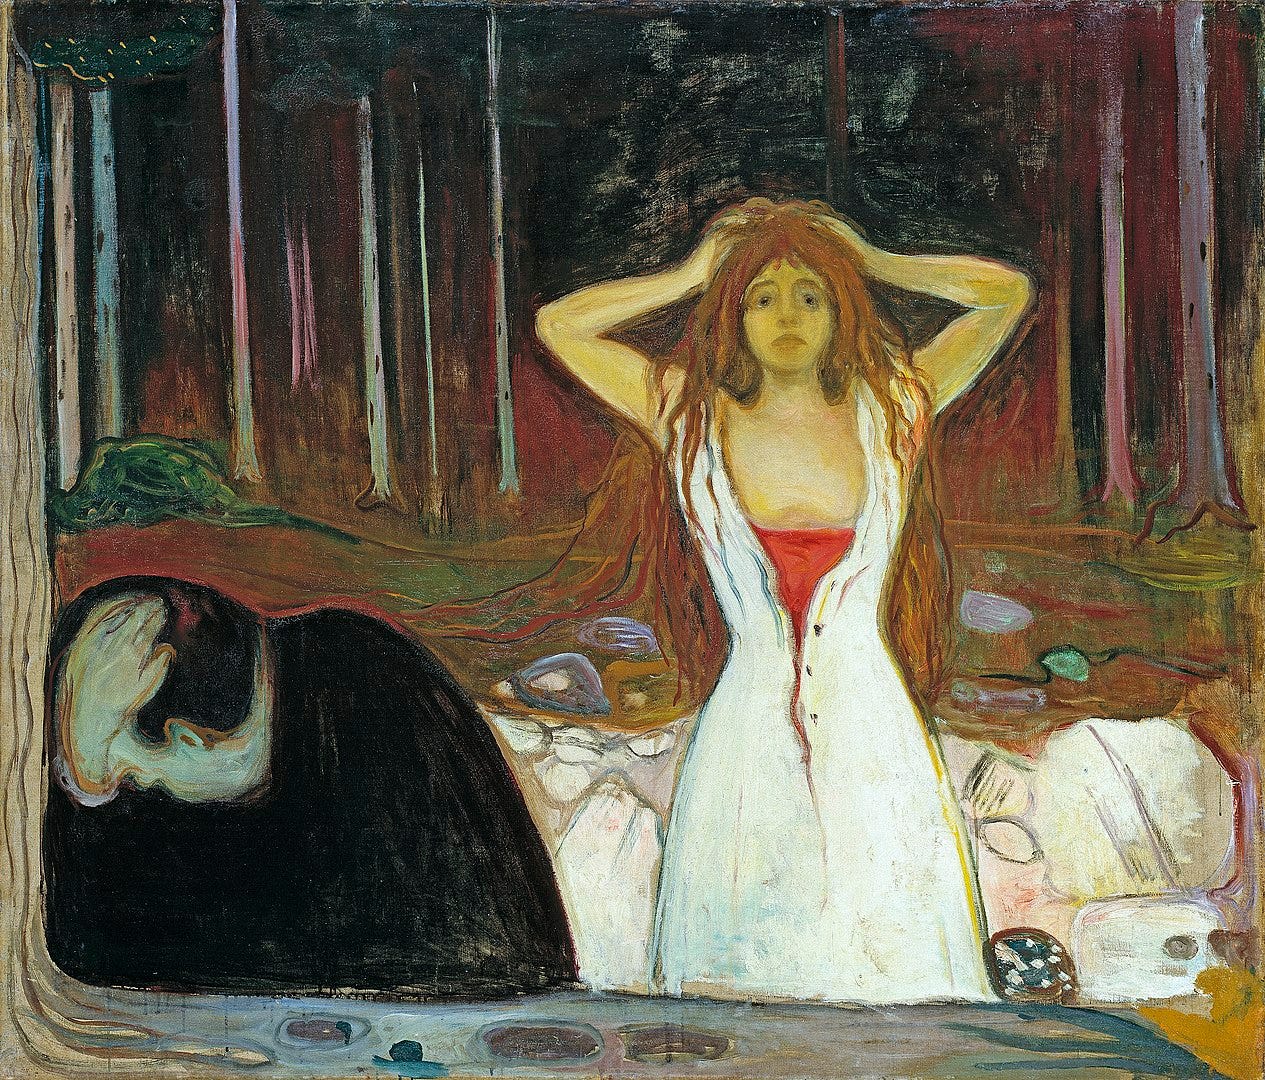 Edvard Munch, Ashes, 1894